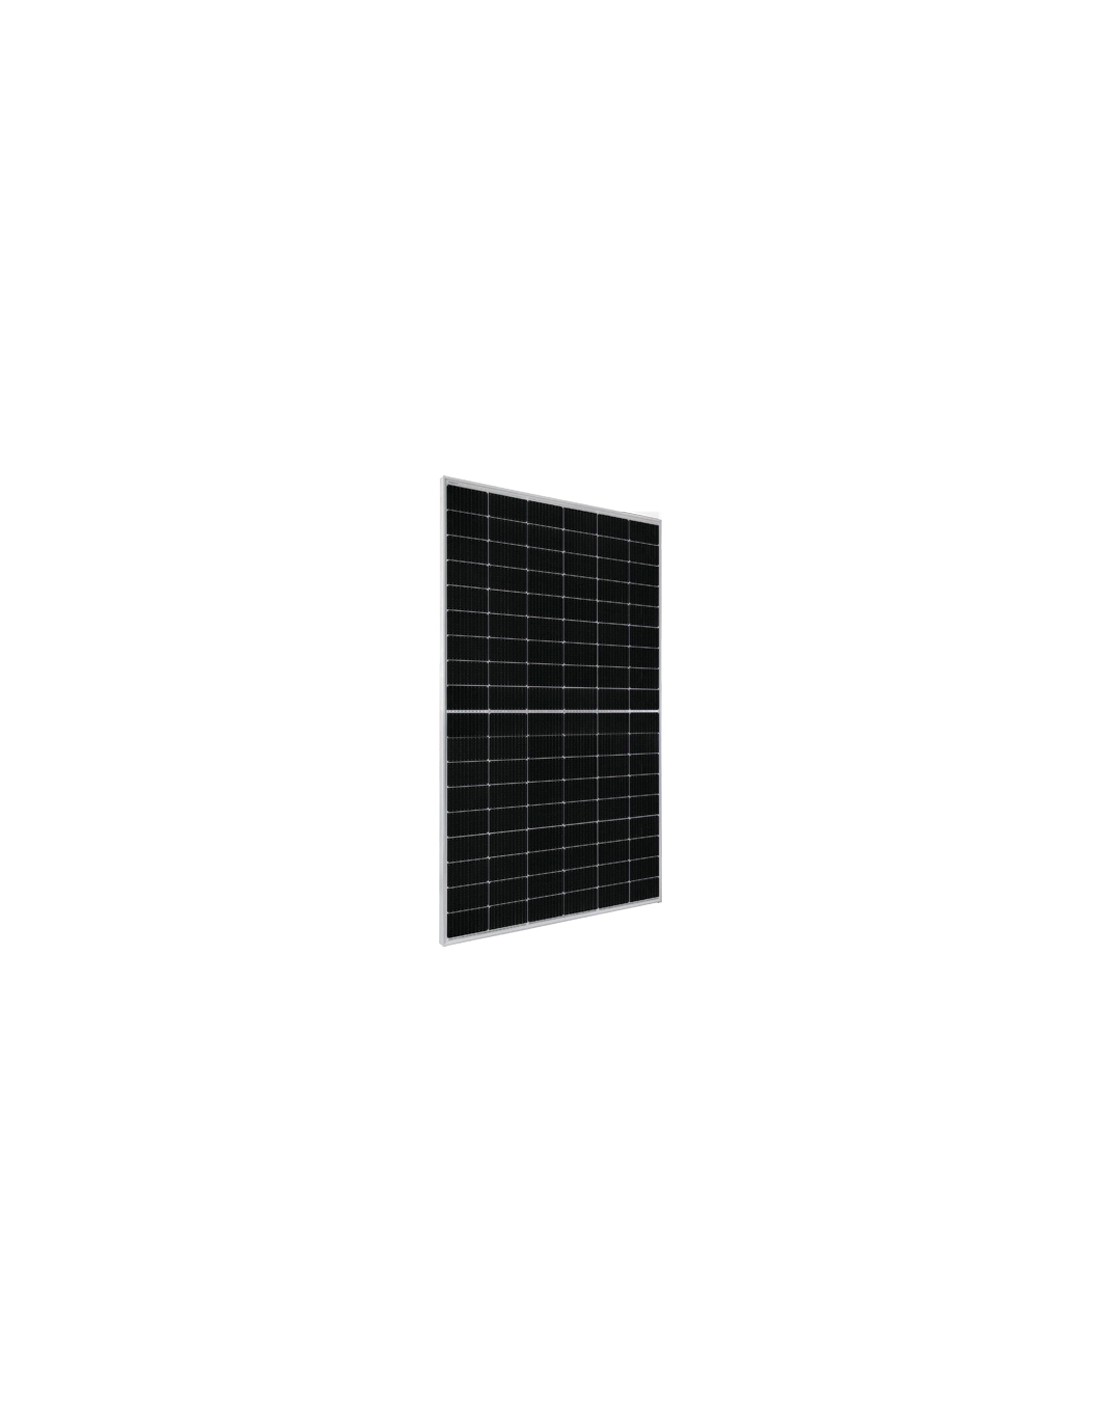 PV Pannello Solare Fotovoltaico 405W Monocristallino EGING PV semicelle Impianto 